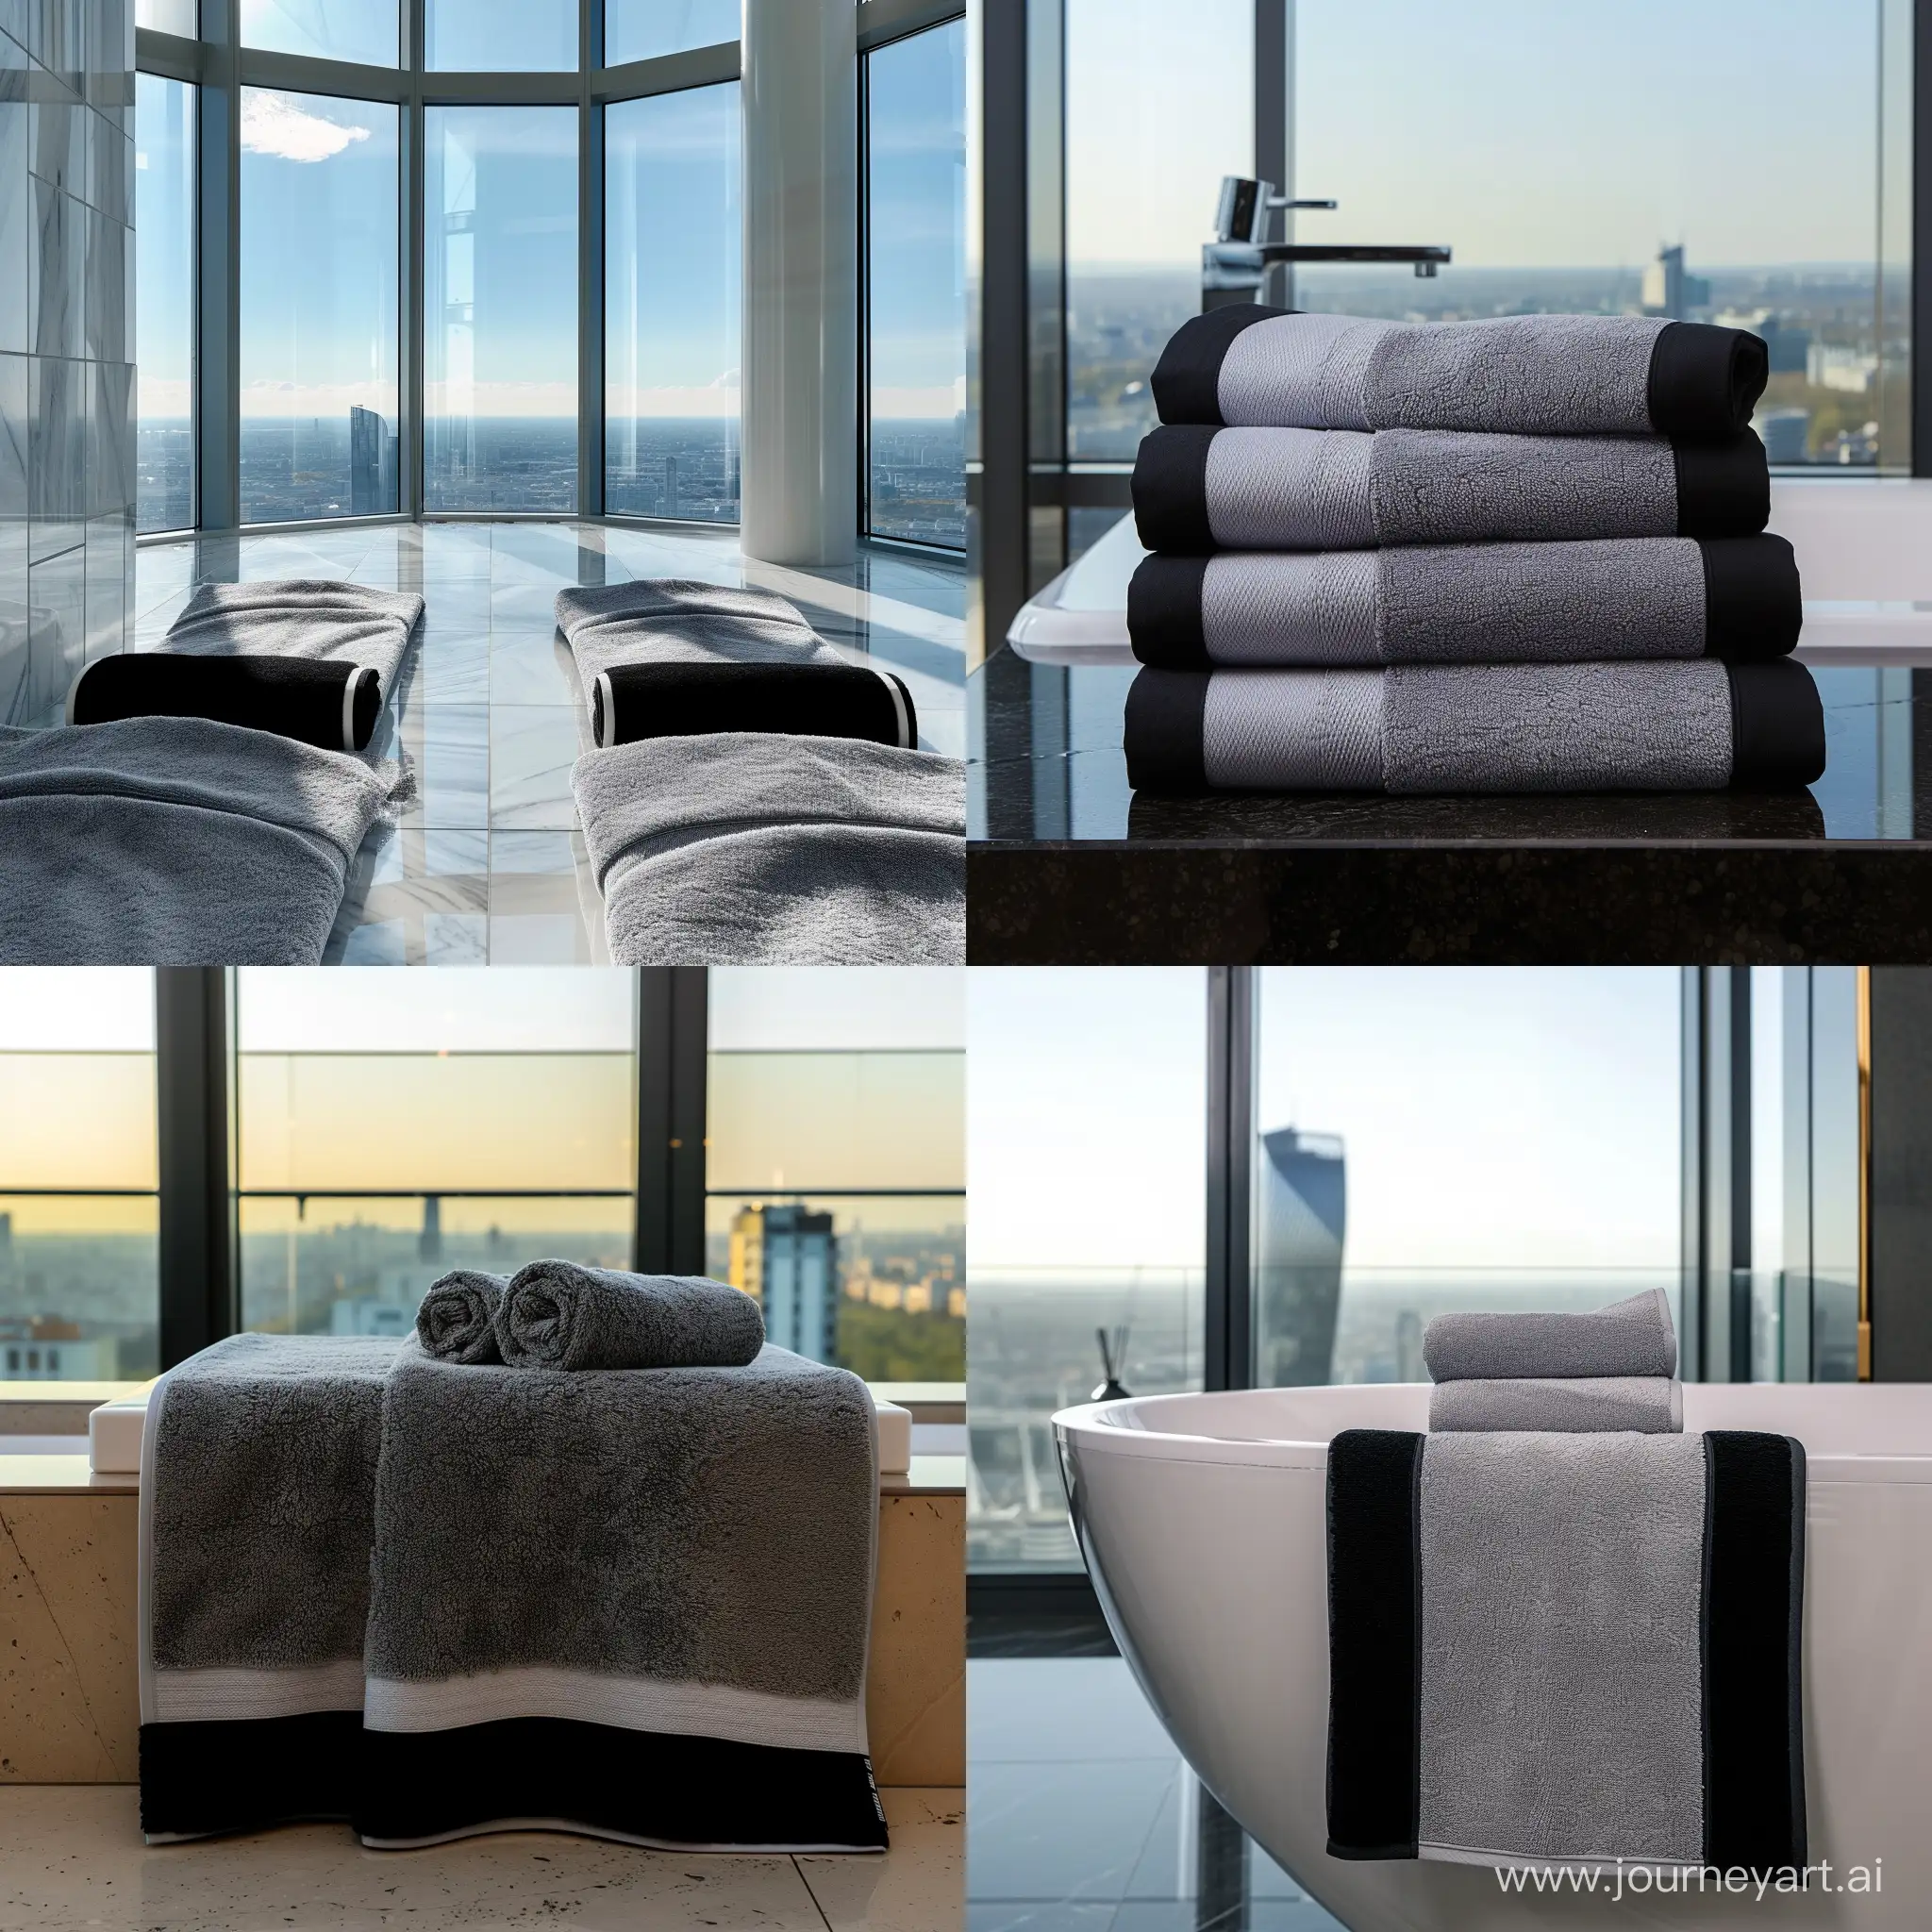 банные полотенца серого цвета с черными бортиками в дорогой квартире с панорамными окнами